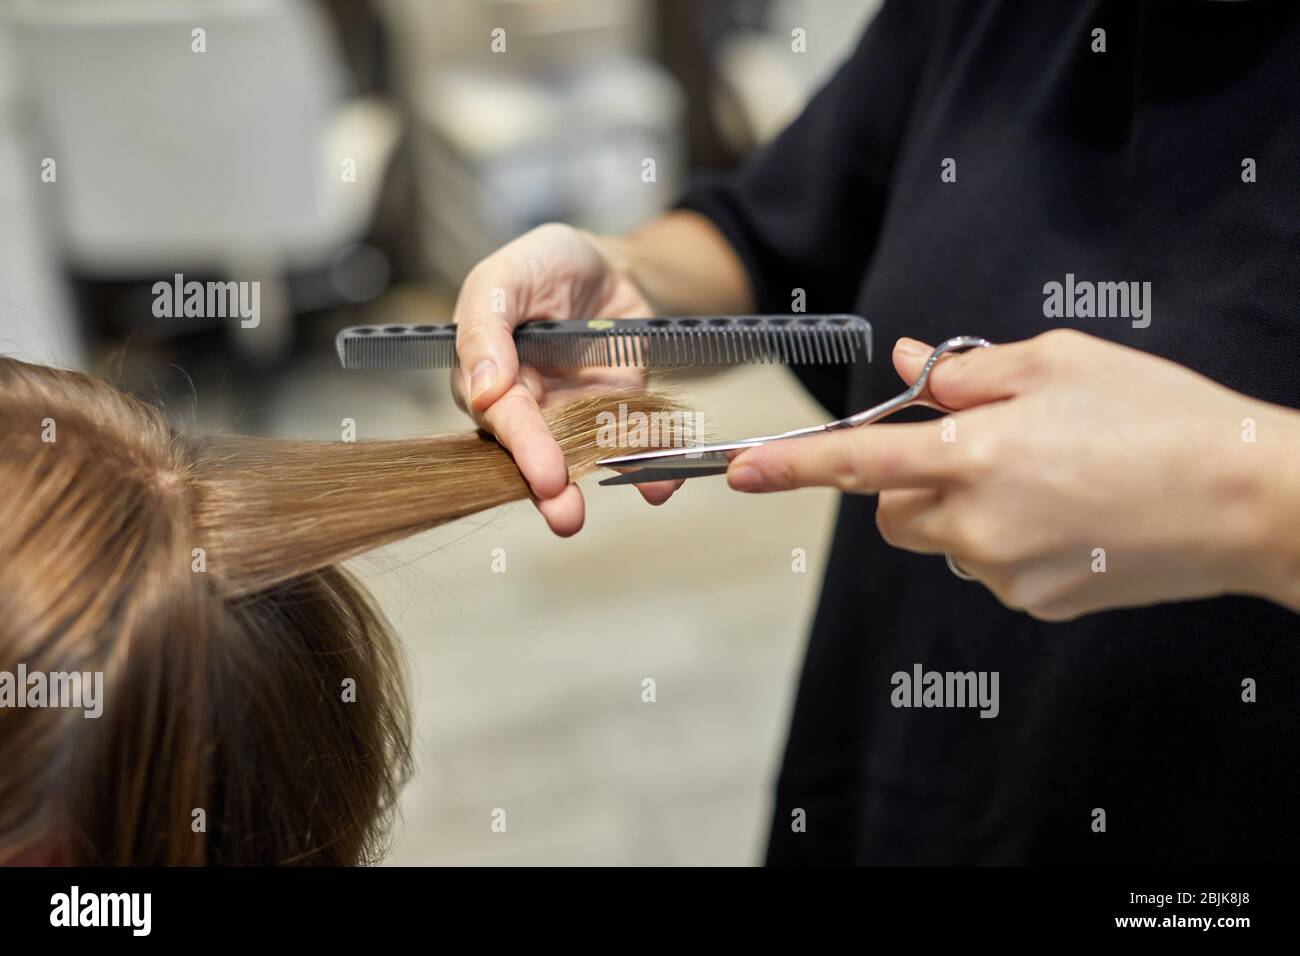 Friseur Schneiden Haare mit Schere zu einem Mann, Friseursalon und Beauty-Klinik. Stockfoto